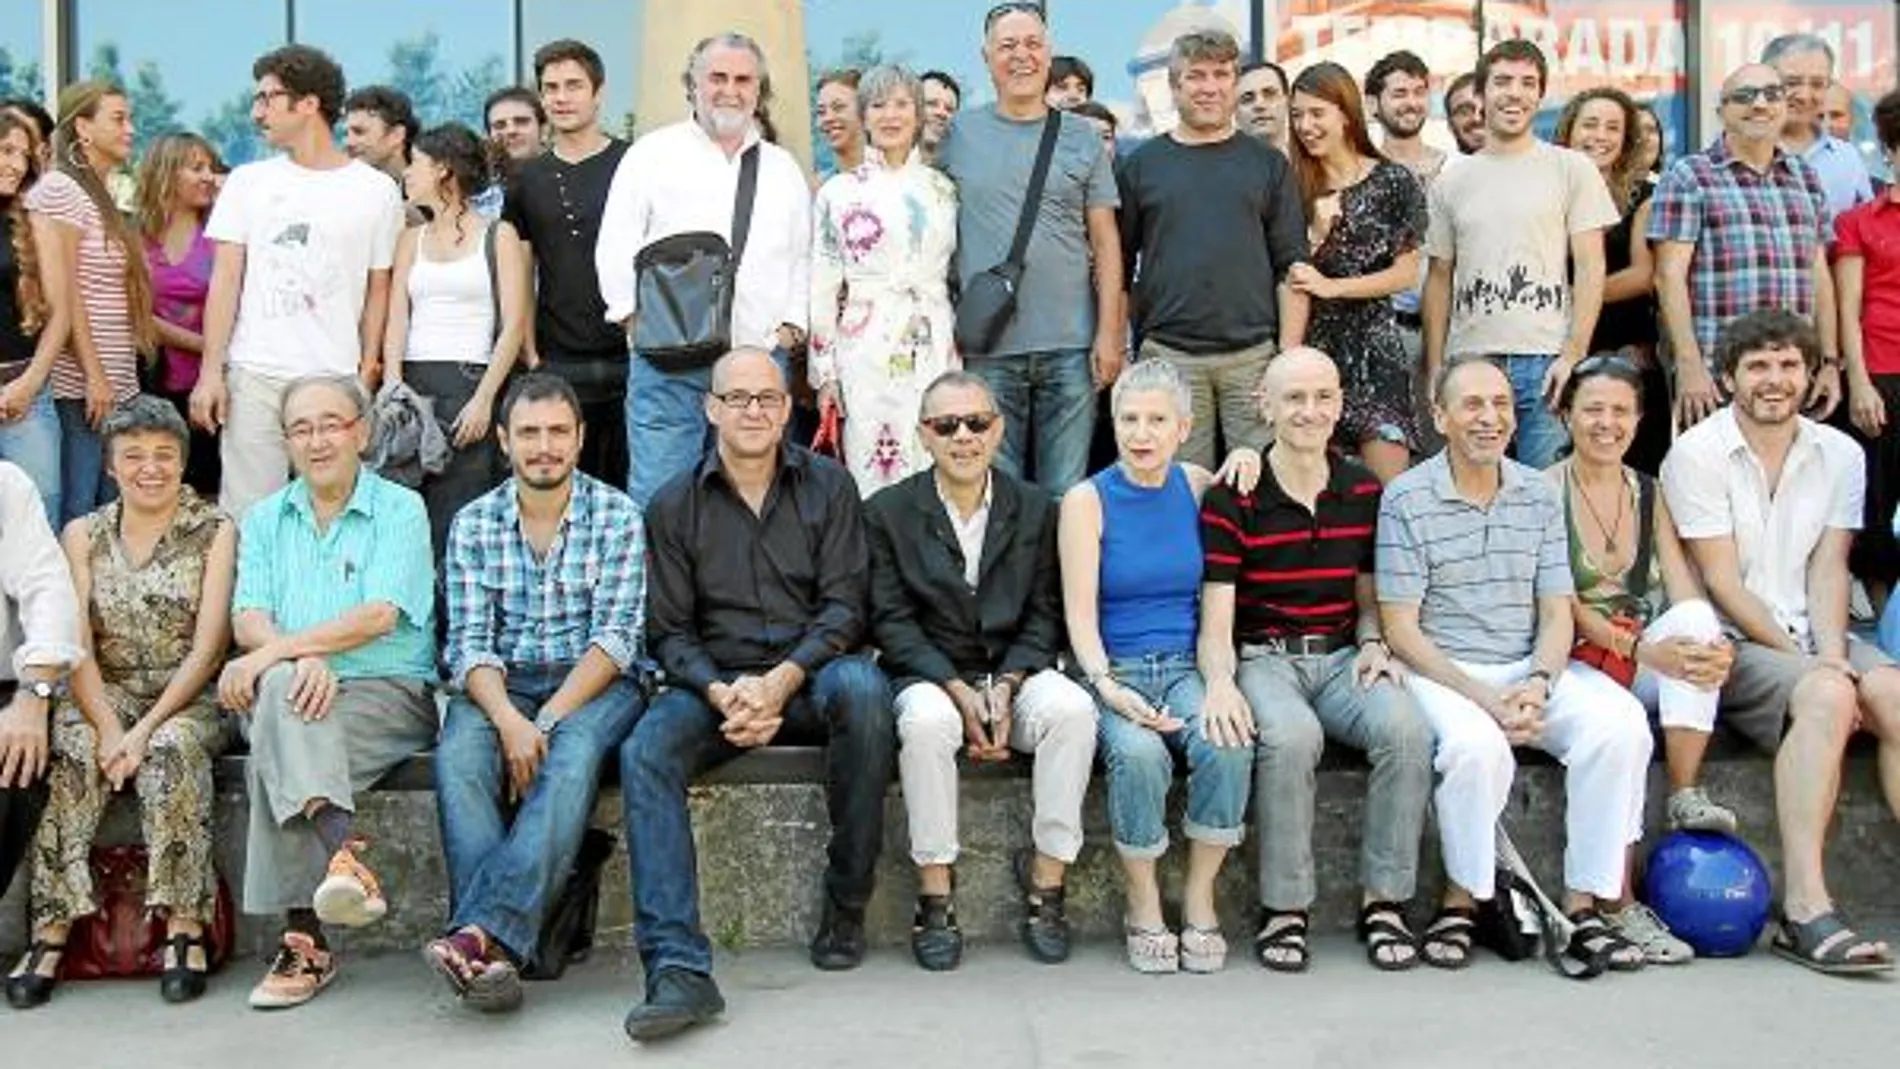 Àlex Rigola y Lluís Pasqual en el centro con los protagonistas de la nueva temporada del Teatre Lliure